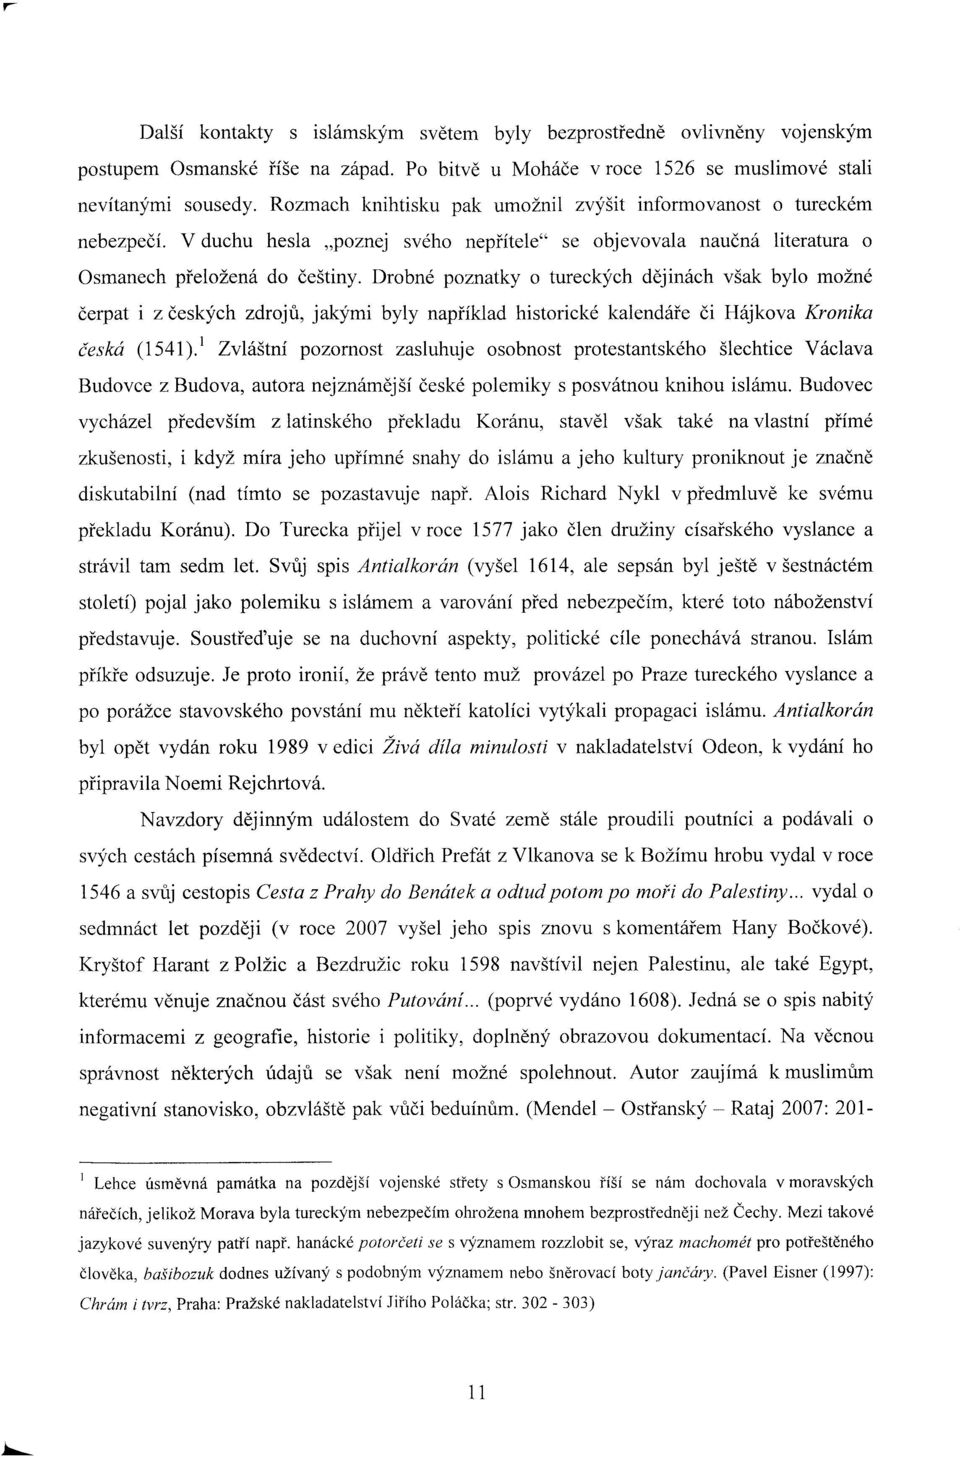 Drobné poznatky o tureckých dějinách však bylo možné čerpat i z českých zdrojů, jakými byly například historické kalendáře či Hájkova Kronika česká (1541).